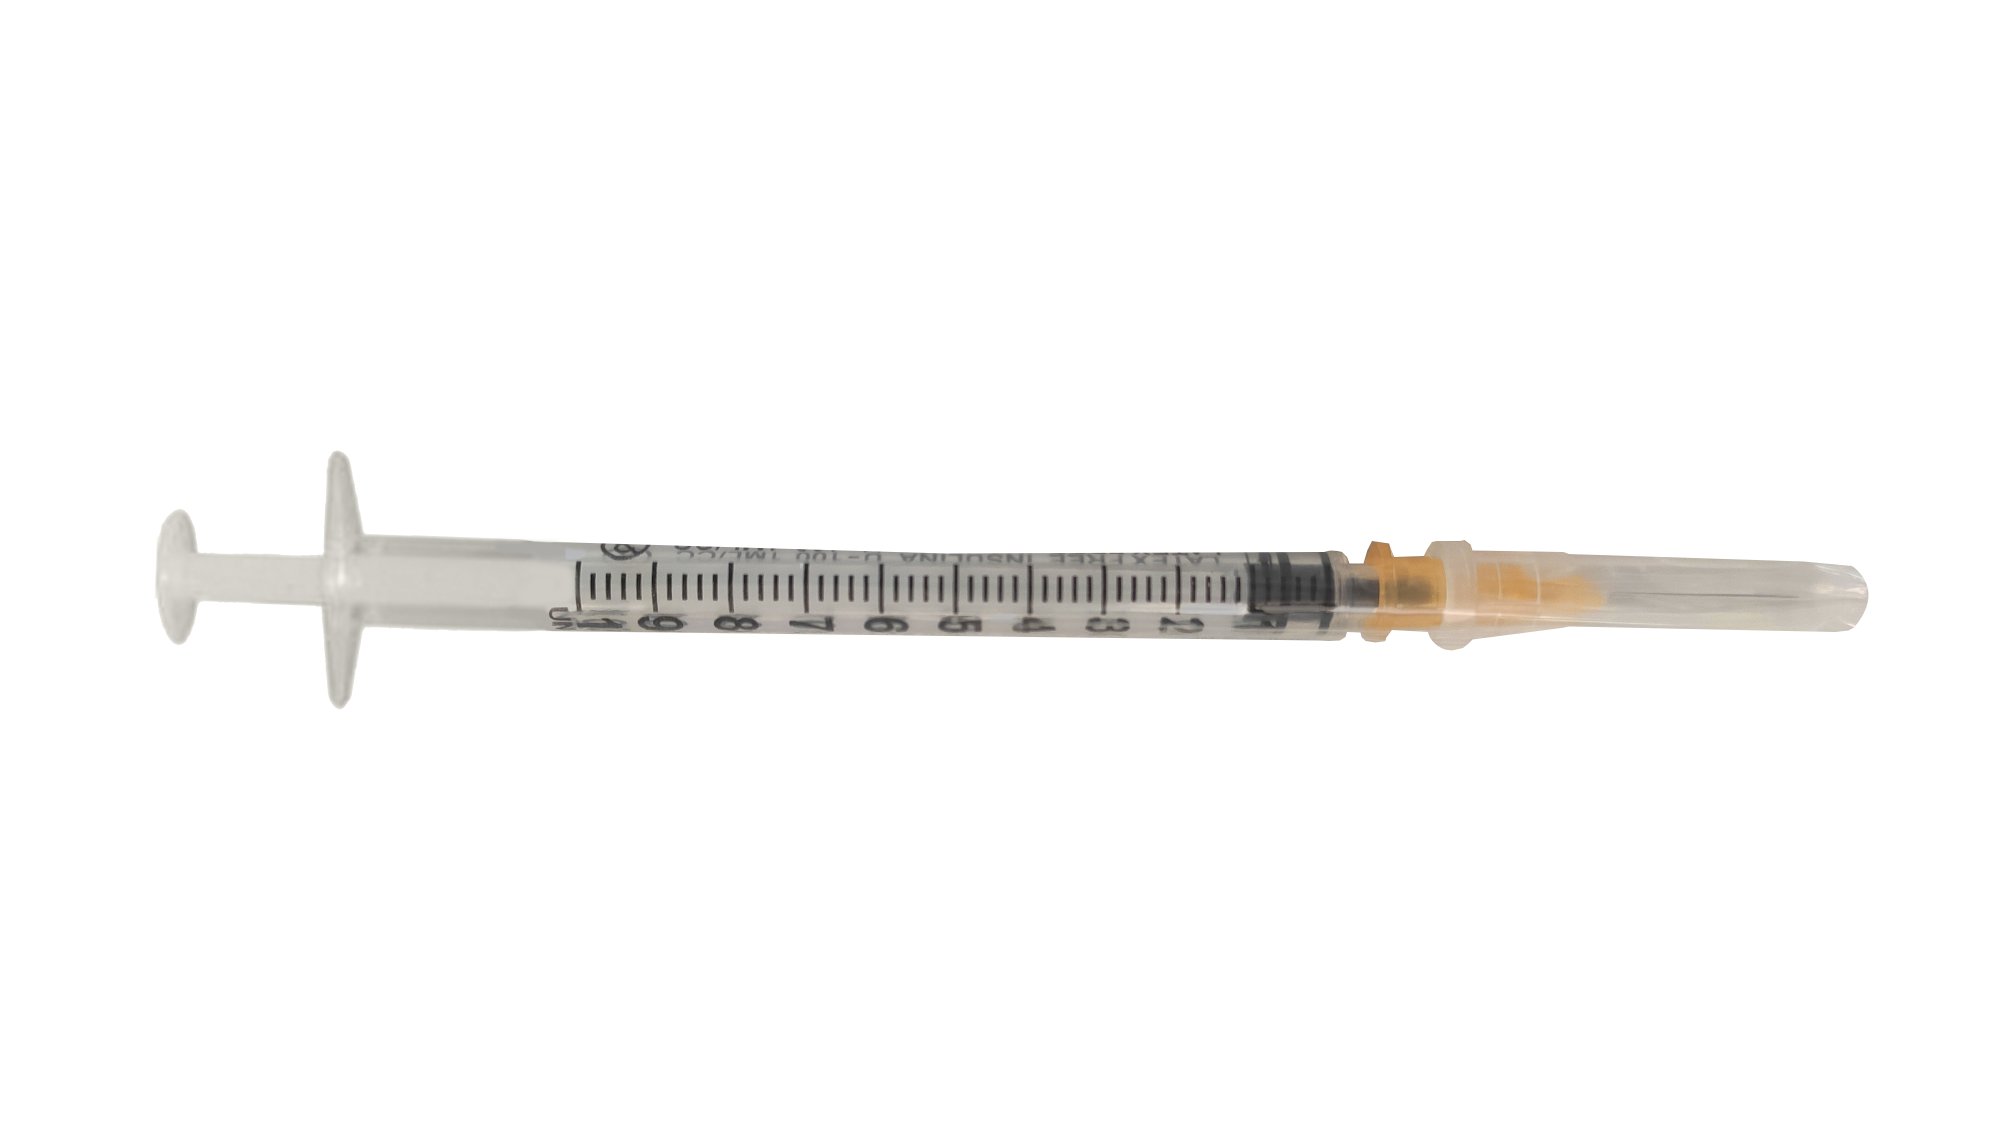 Jeringa de insulina 1ml sin residuo con aguja 25G - 0.5x16 mm. Caja de 100 unidades